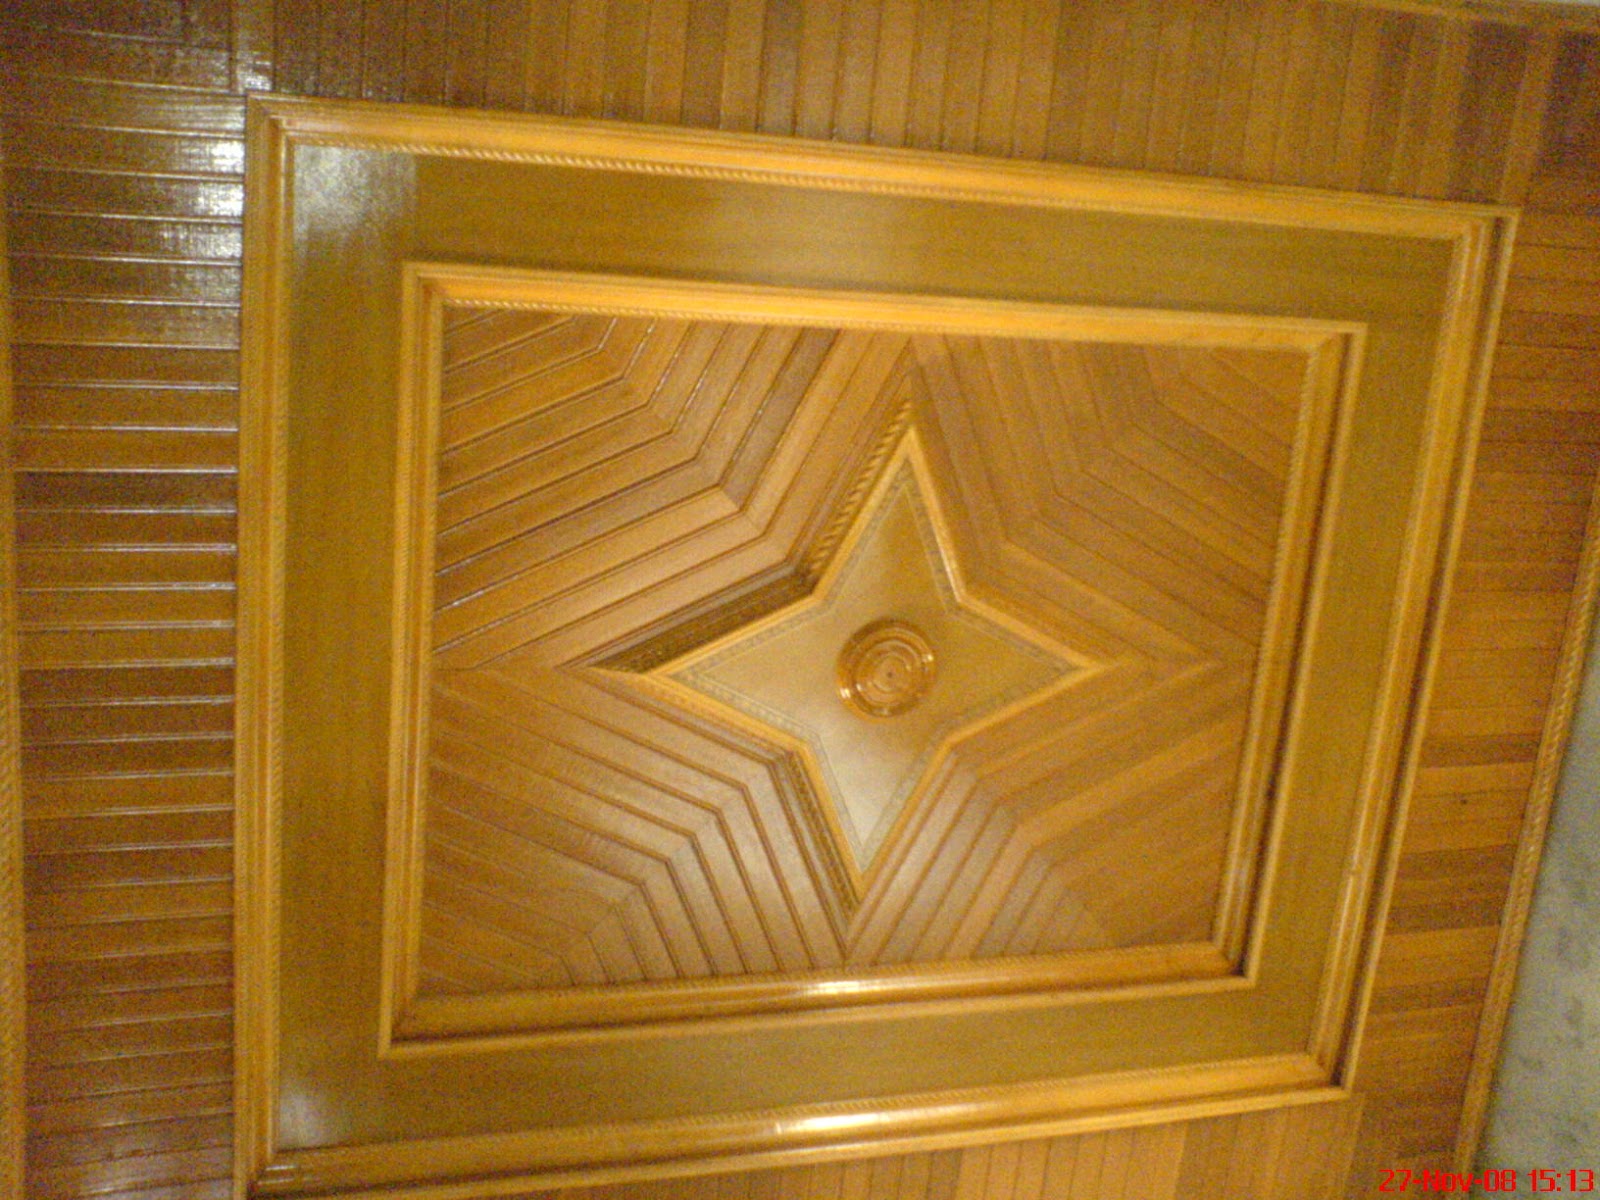 BUNDA PROFIL: Foto plafon kayu cantik